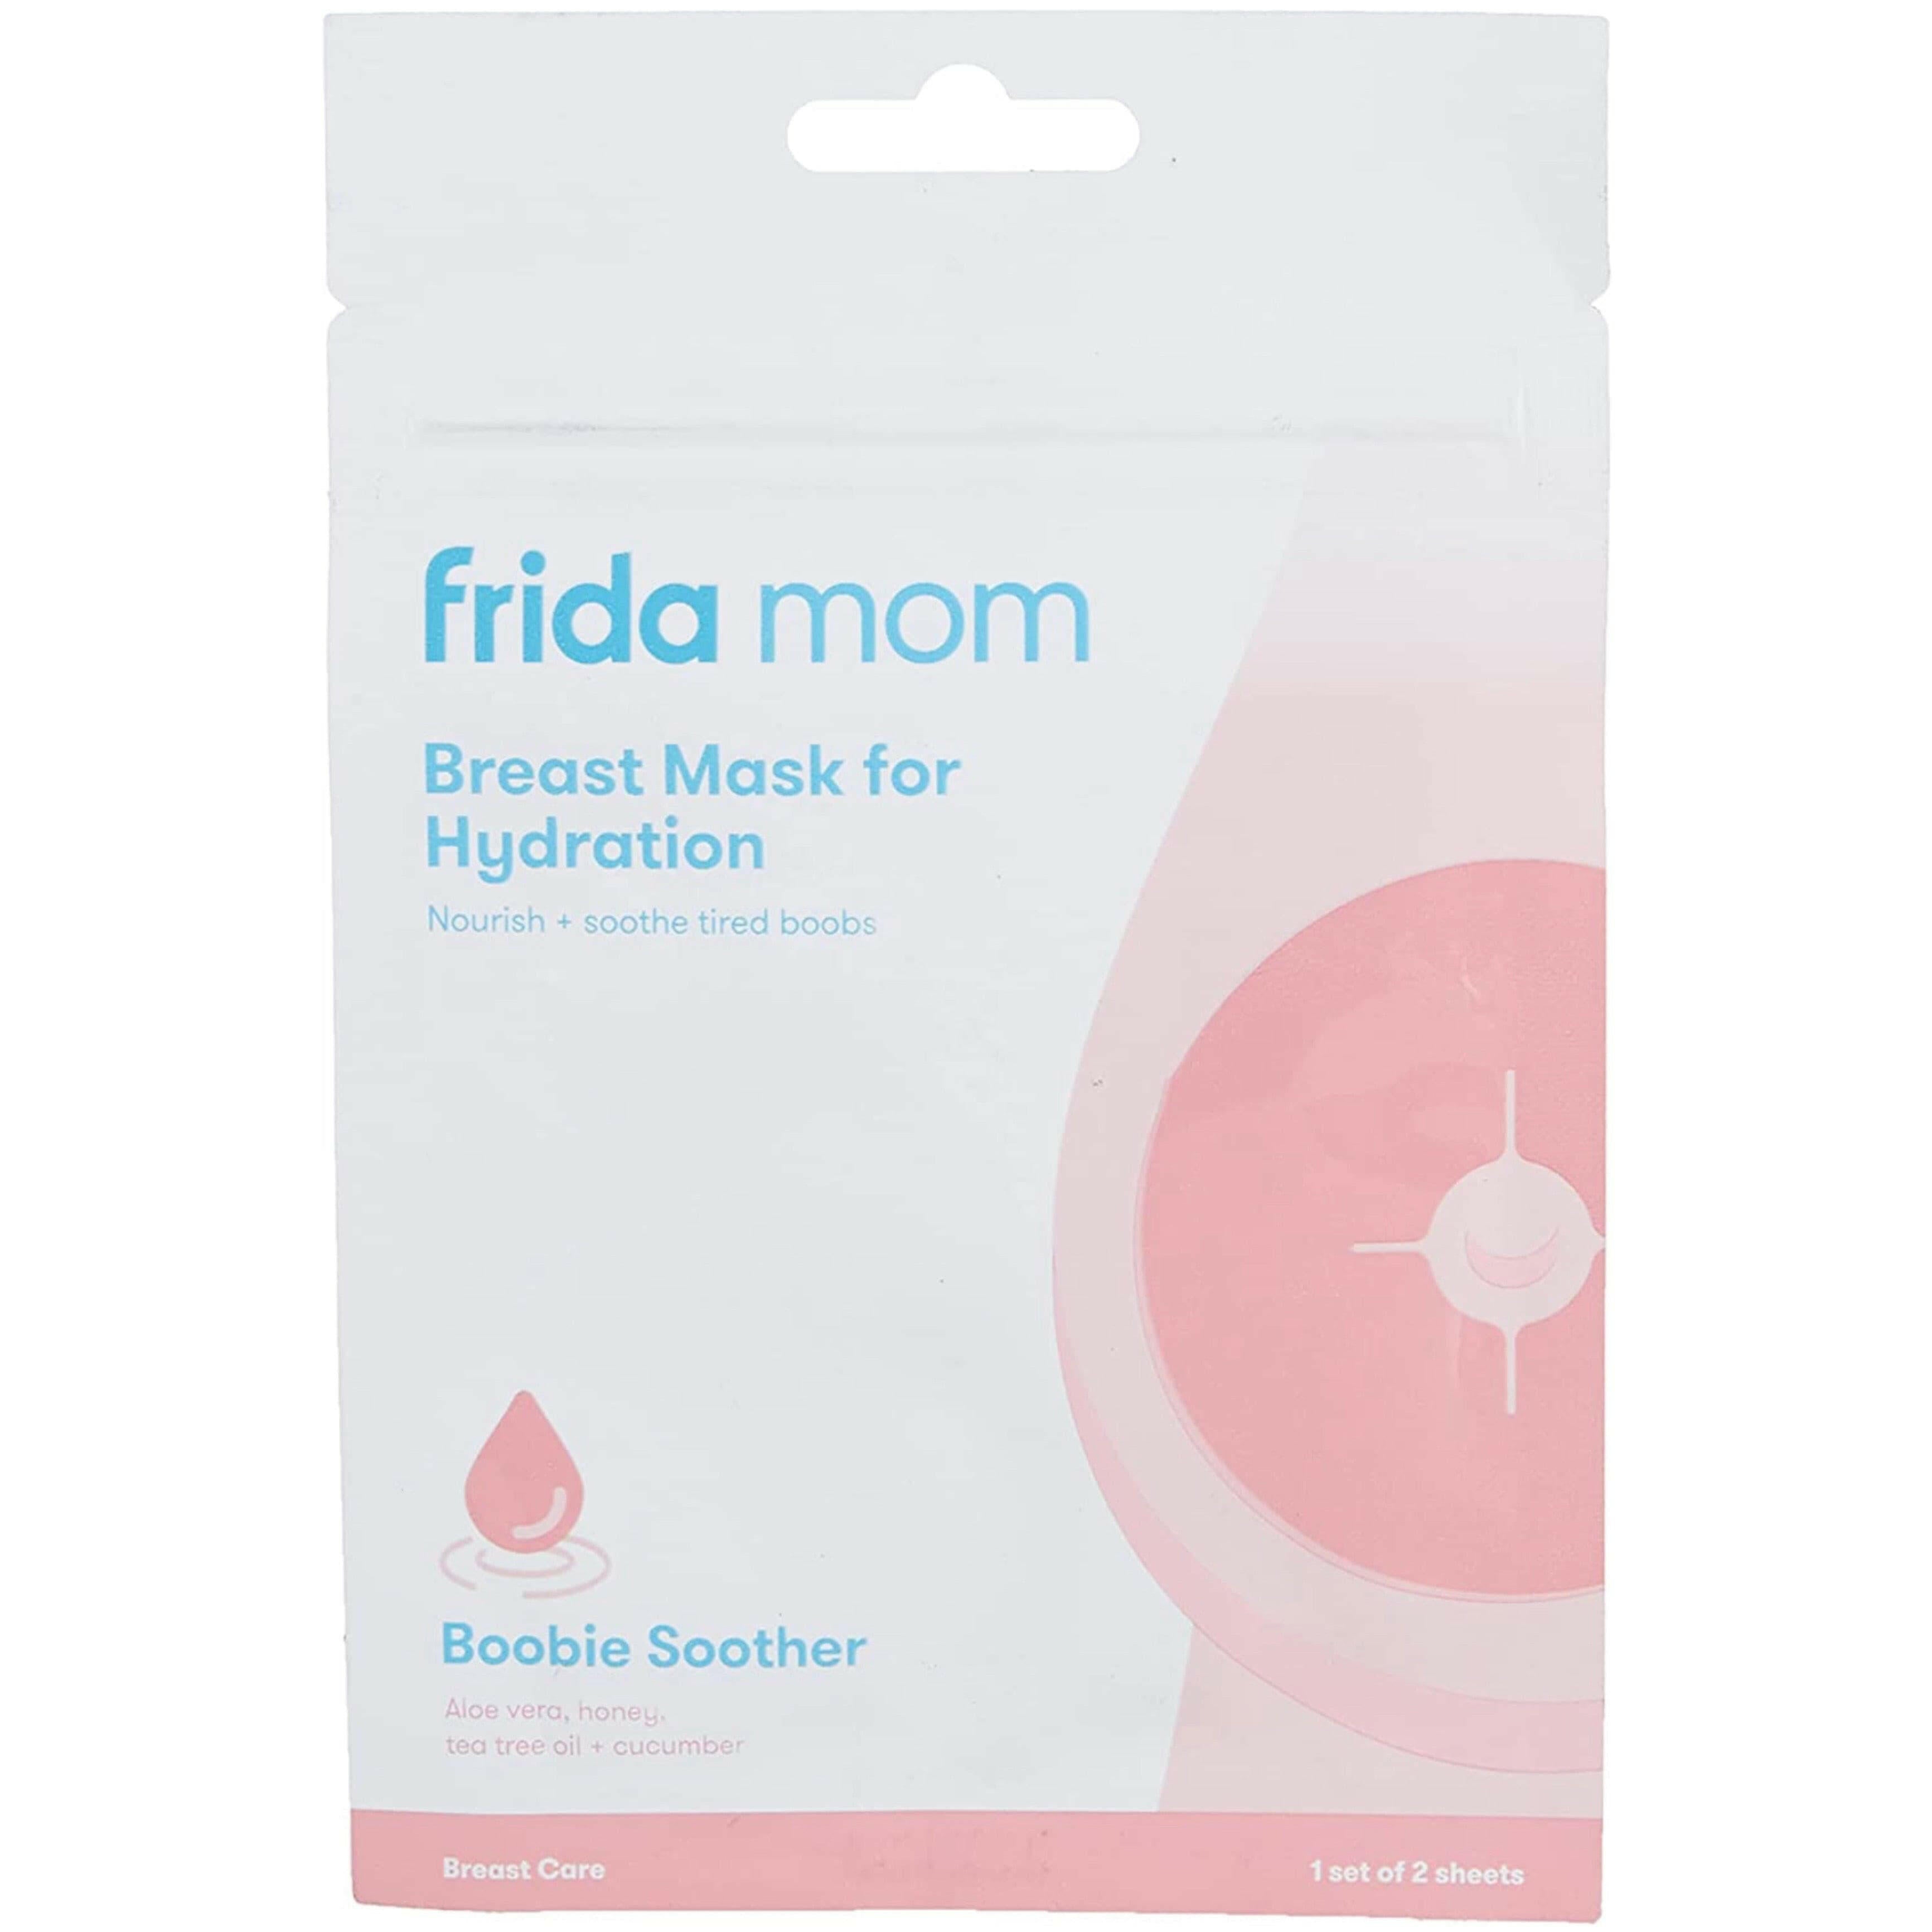 Frida Mom Breast Mask for Hydration.